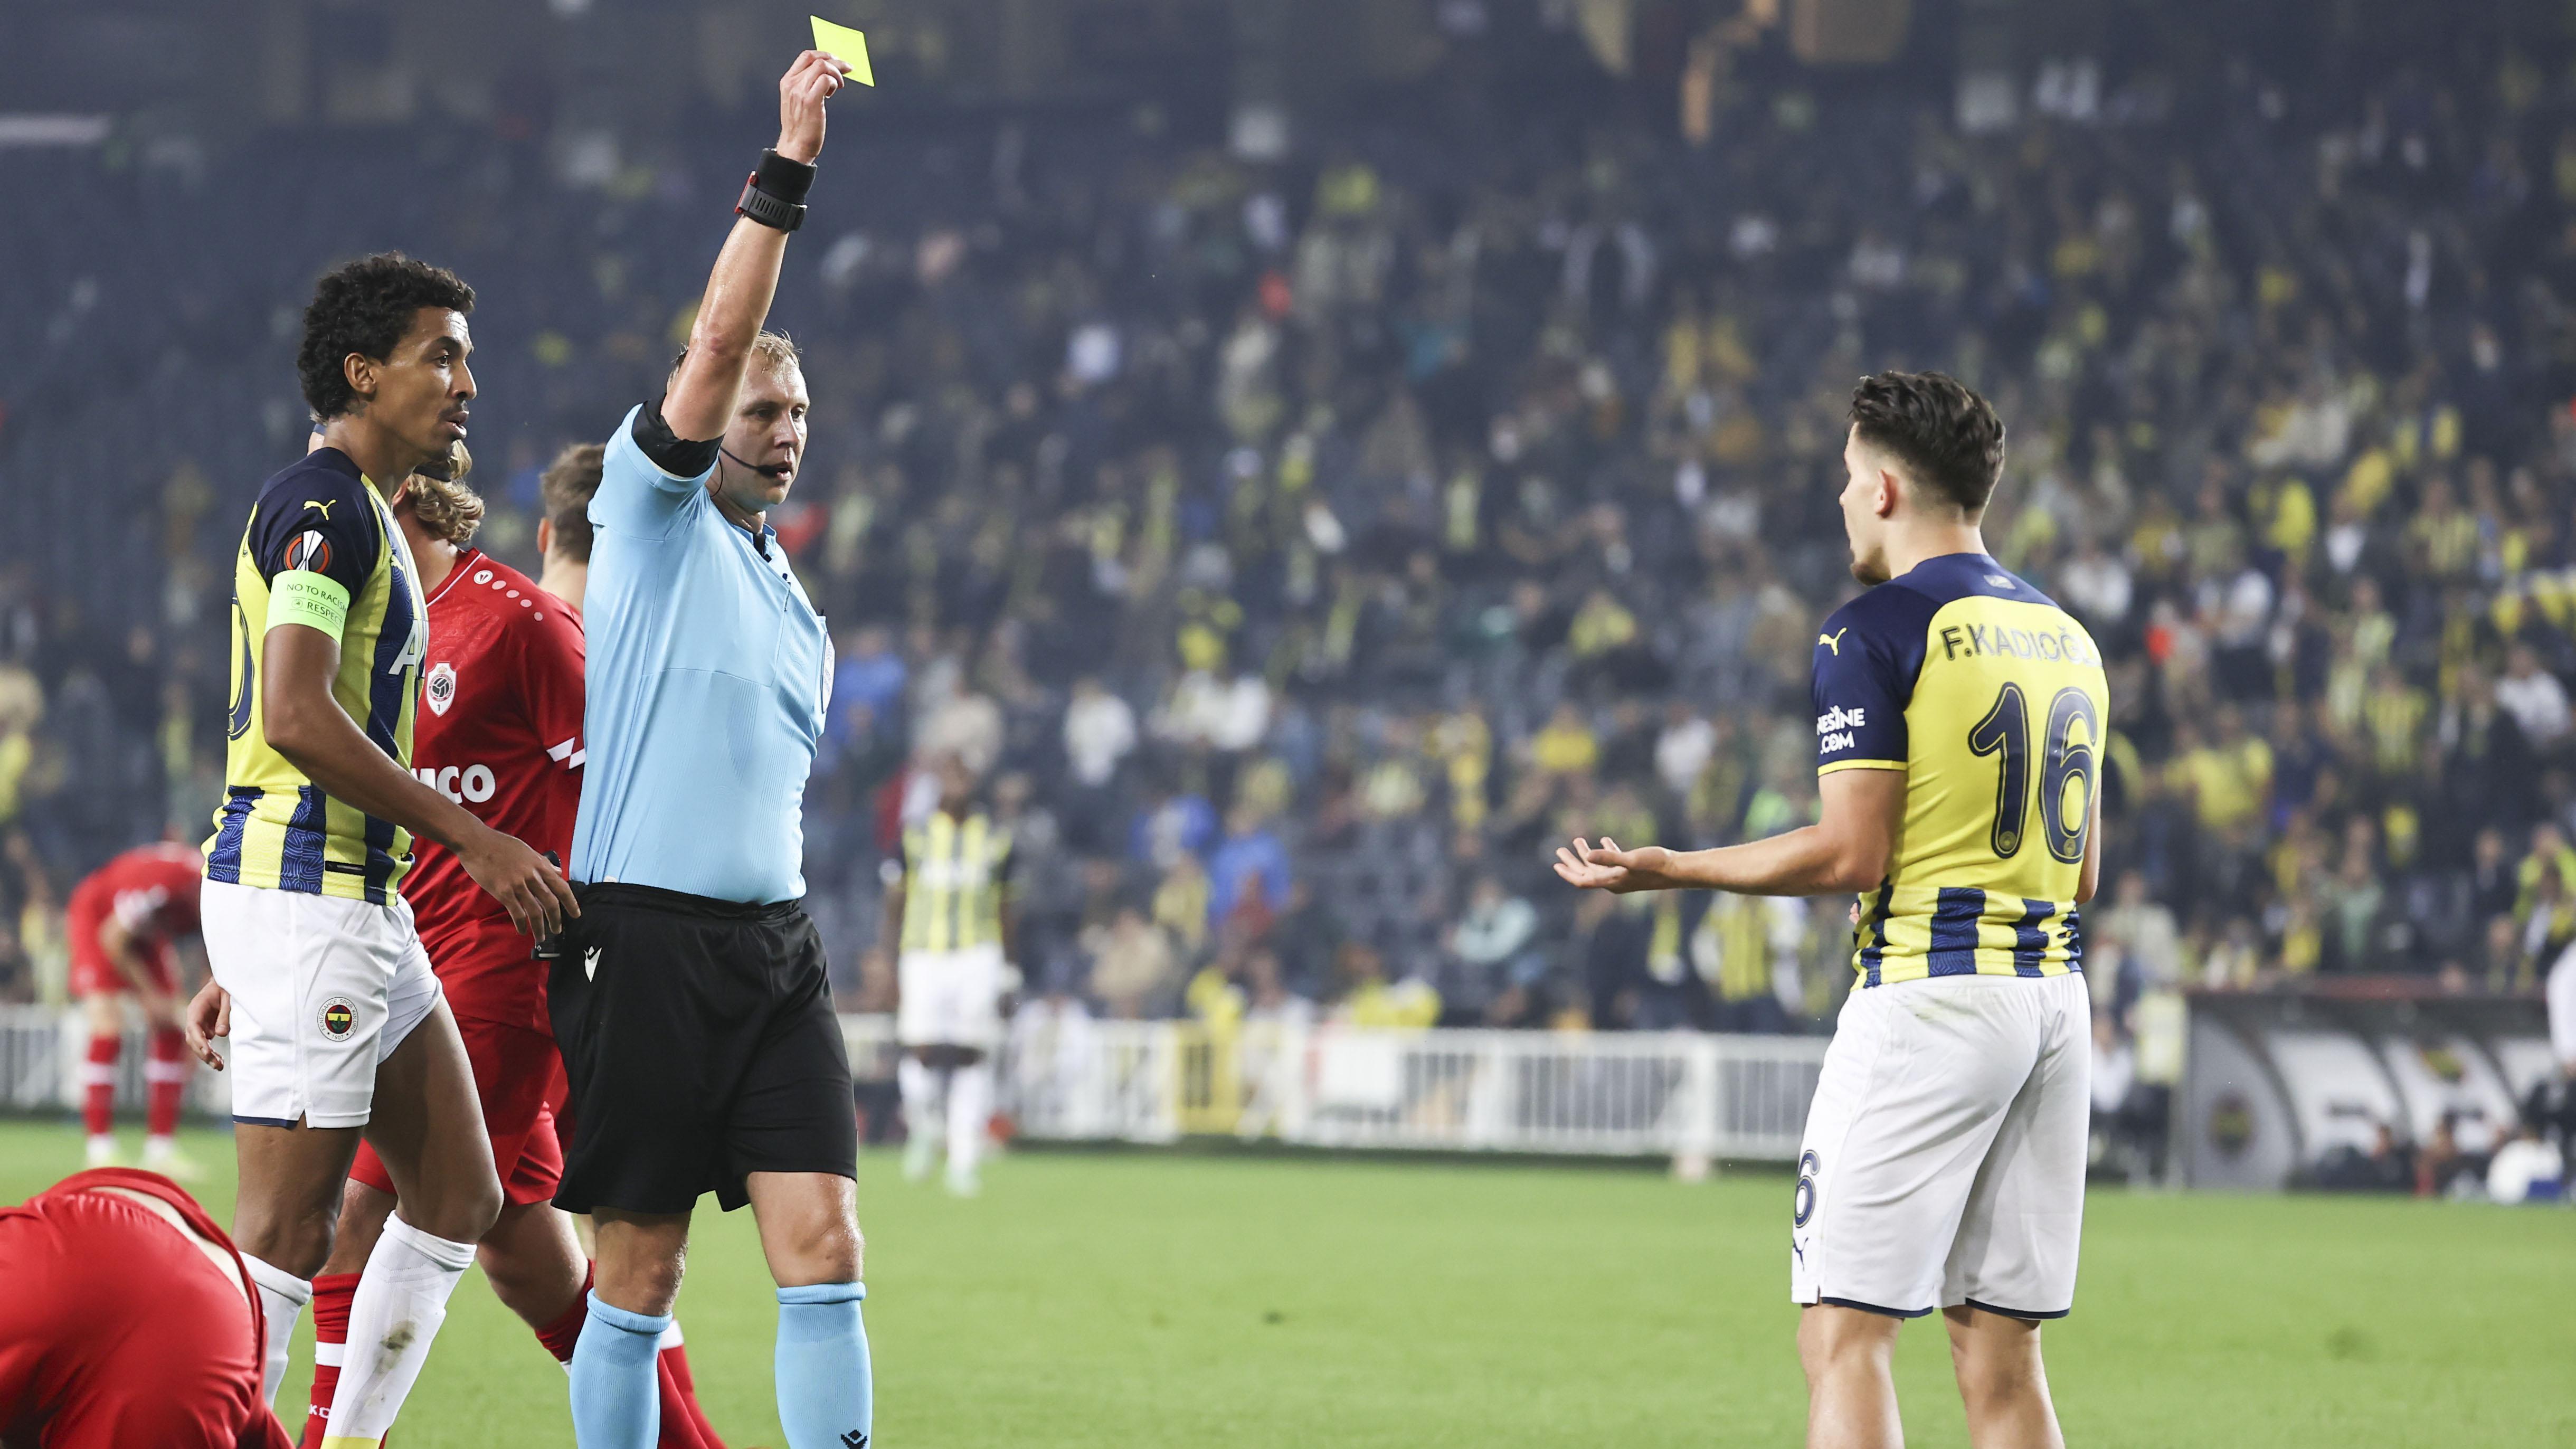 Fenerbahçe 2 - Antwerp 2 Maç özeti ve sonucu